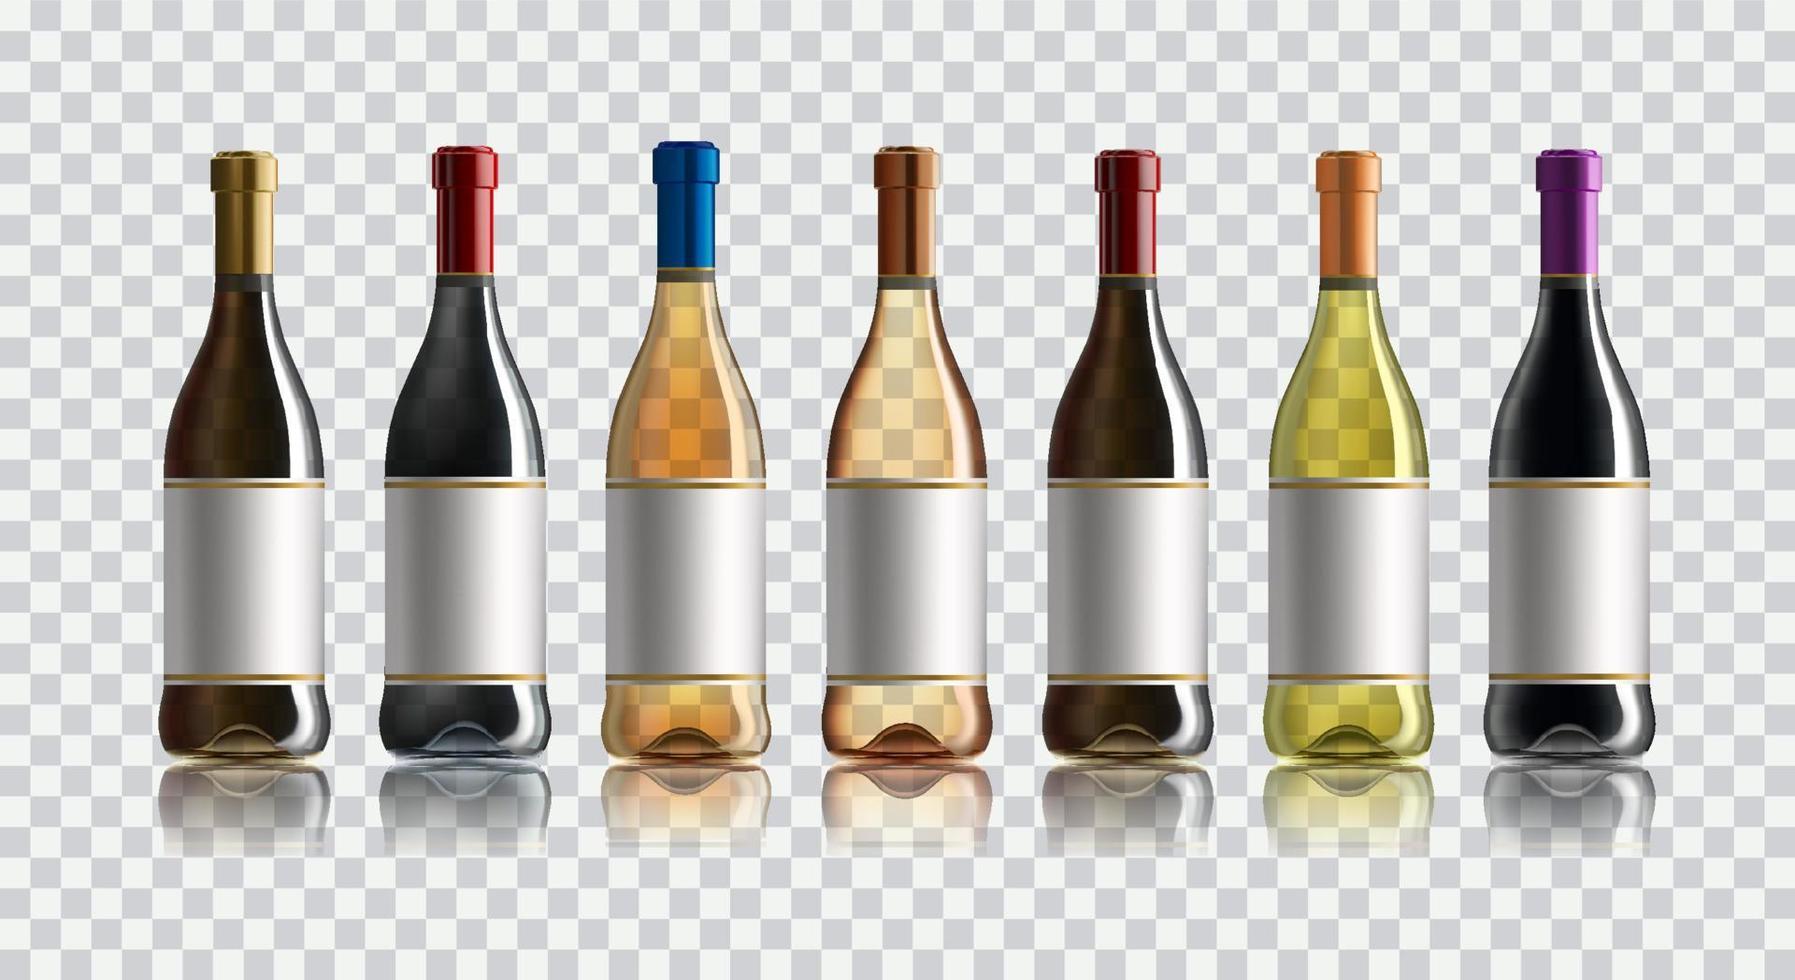 röd vin flaska. uppsättning av vit, reste sig, och röd vin flaskor. isolerat på vit bakgrund. vektor